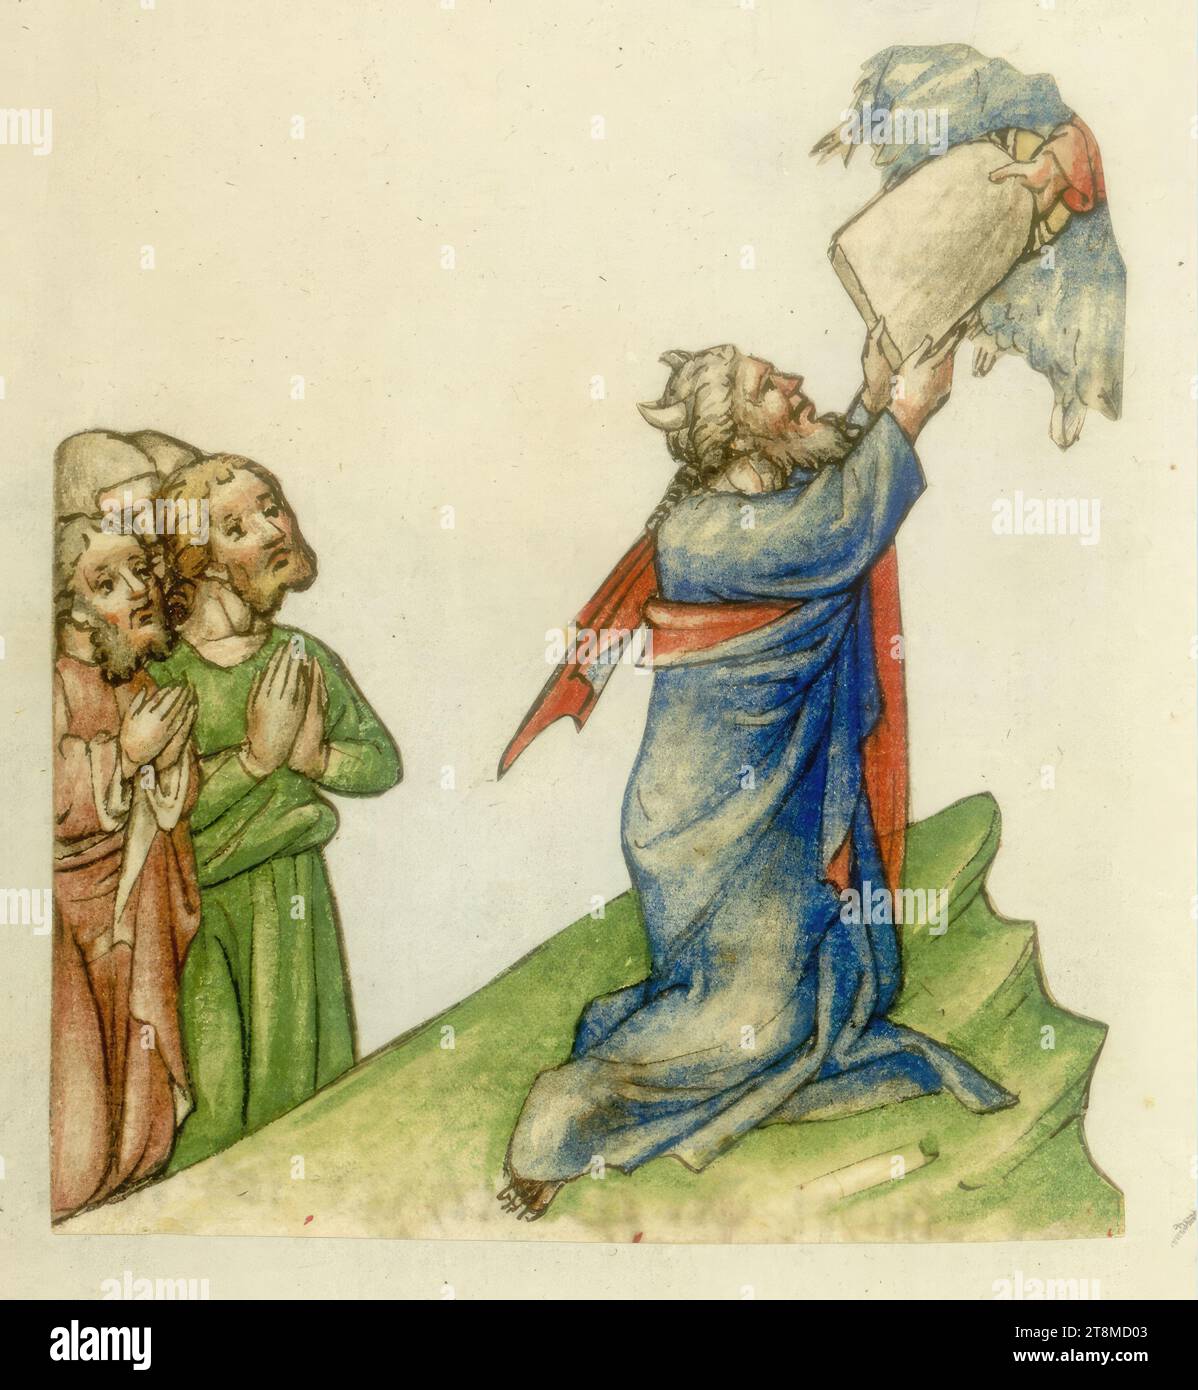 Moïse recevant les tablettes de la Loi, Bible historique, anonyme, 1420 - 1430, dessin, dessin au crayon de couleur Banque D'Images